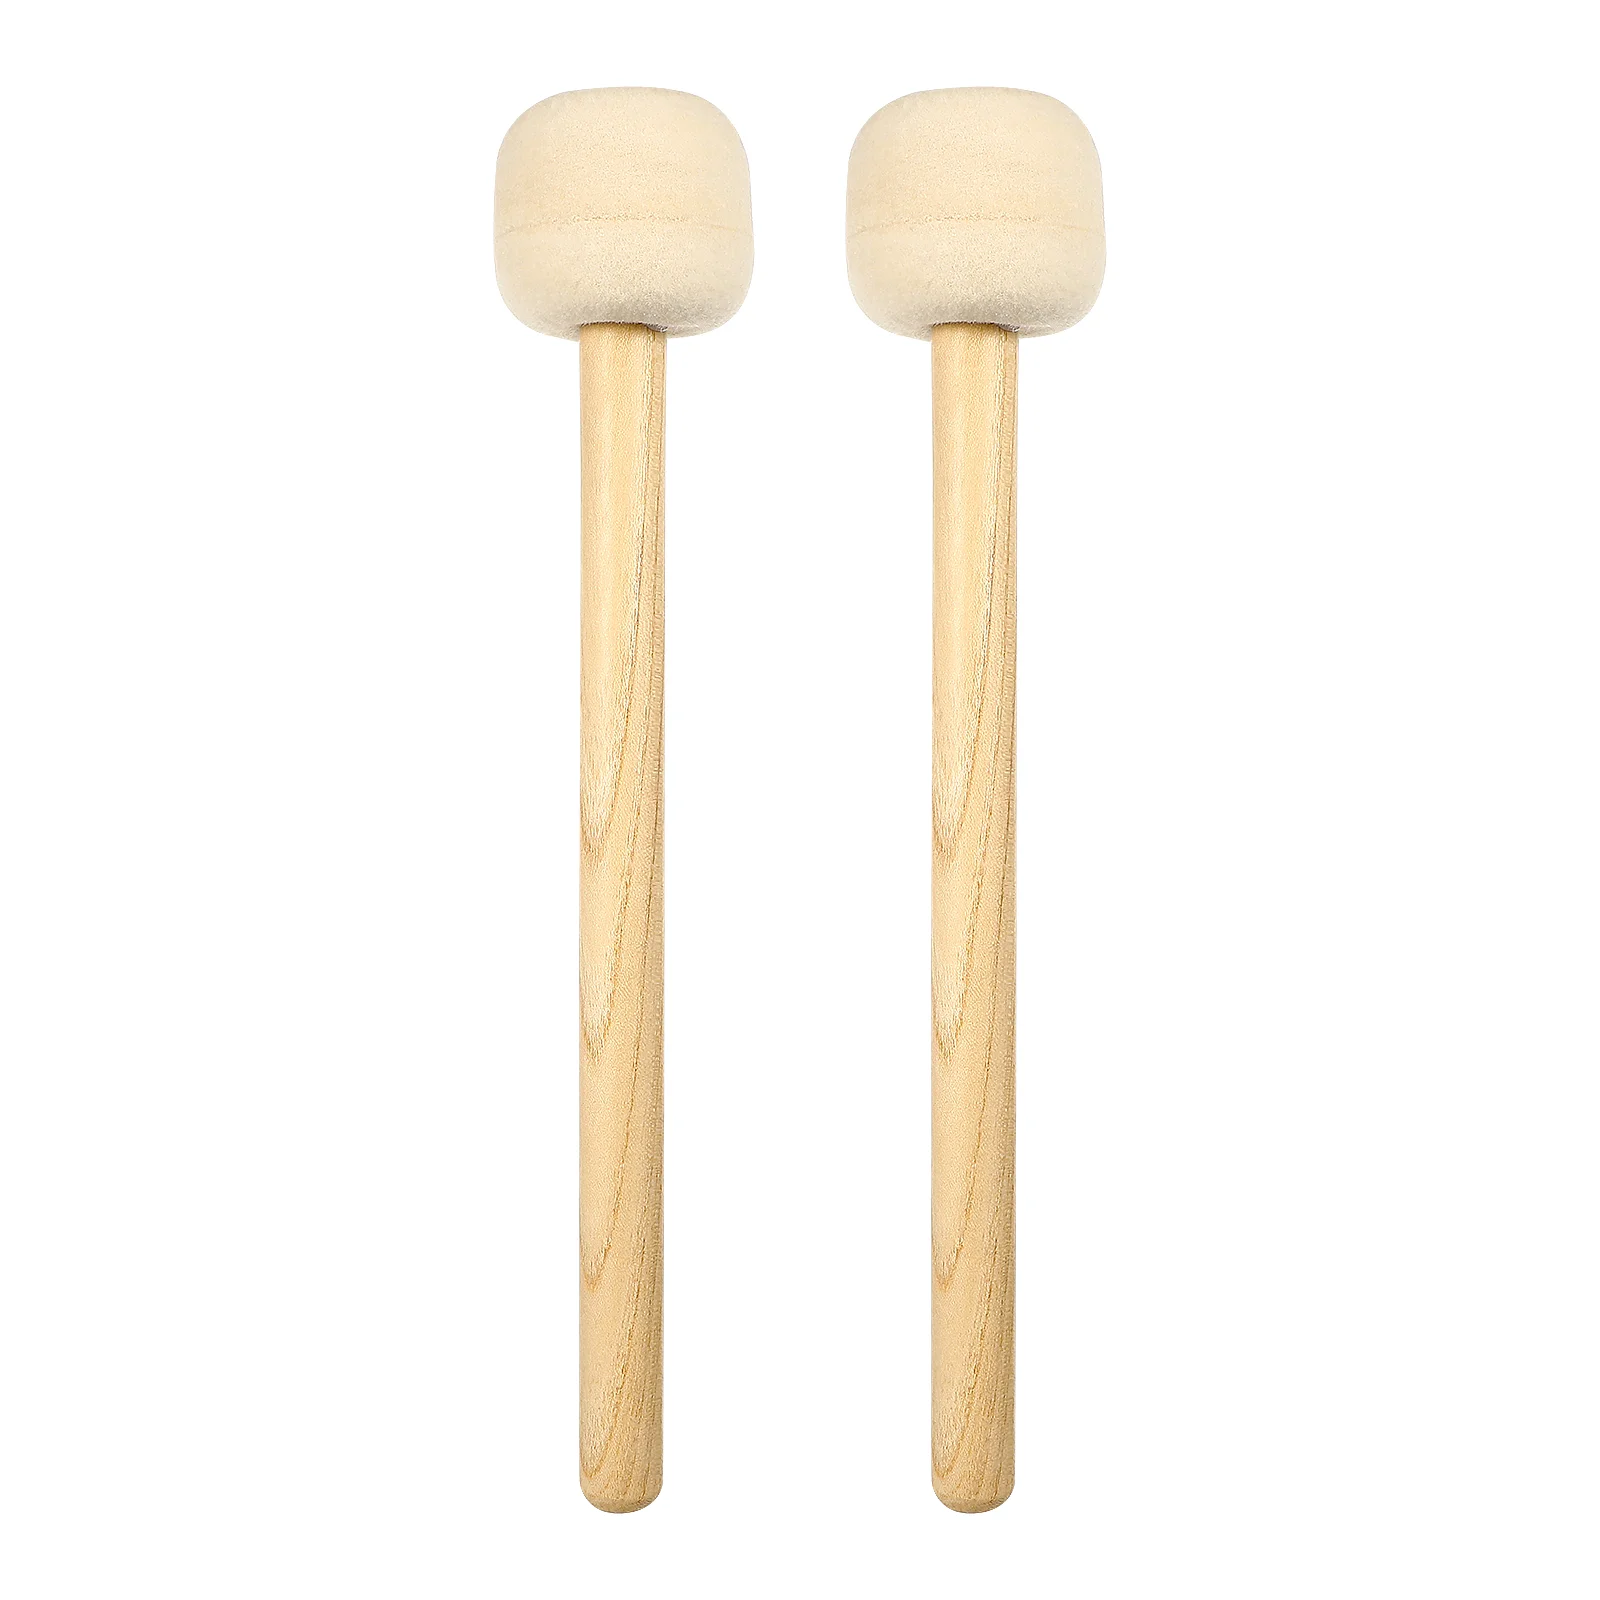 

2 Pcs Wooden Hammer Felt Head Drum Mallets Sticks Bass 5a Drumsticks Instrument Accessories Snare